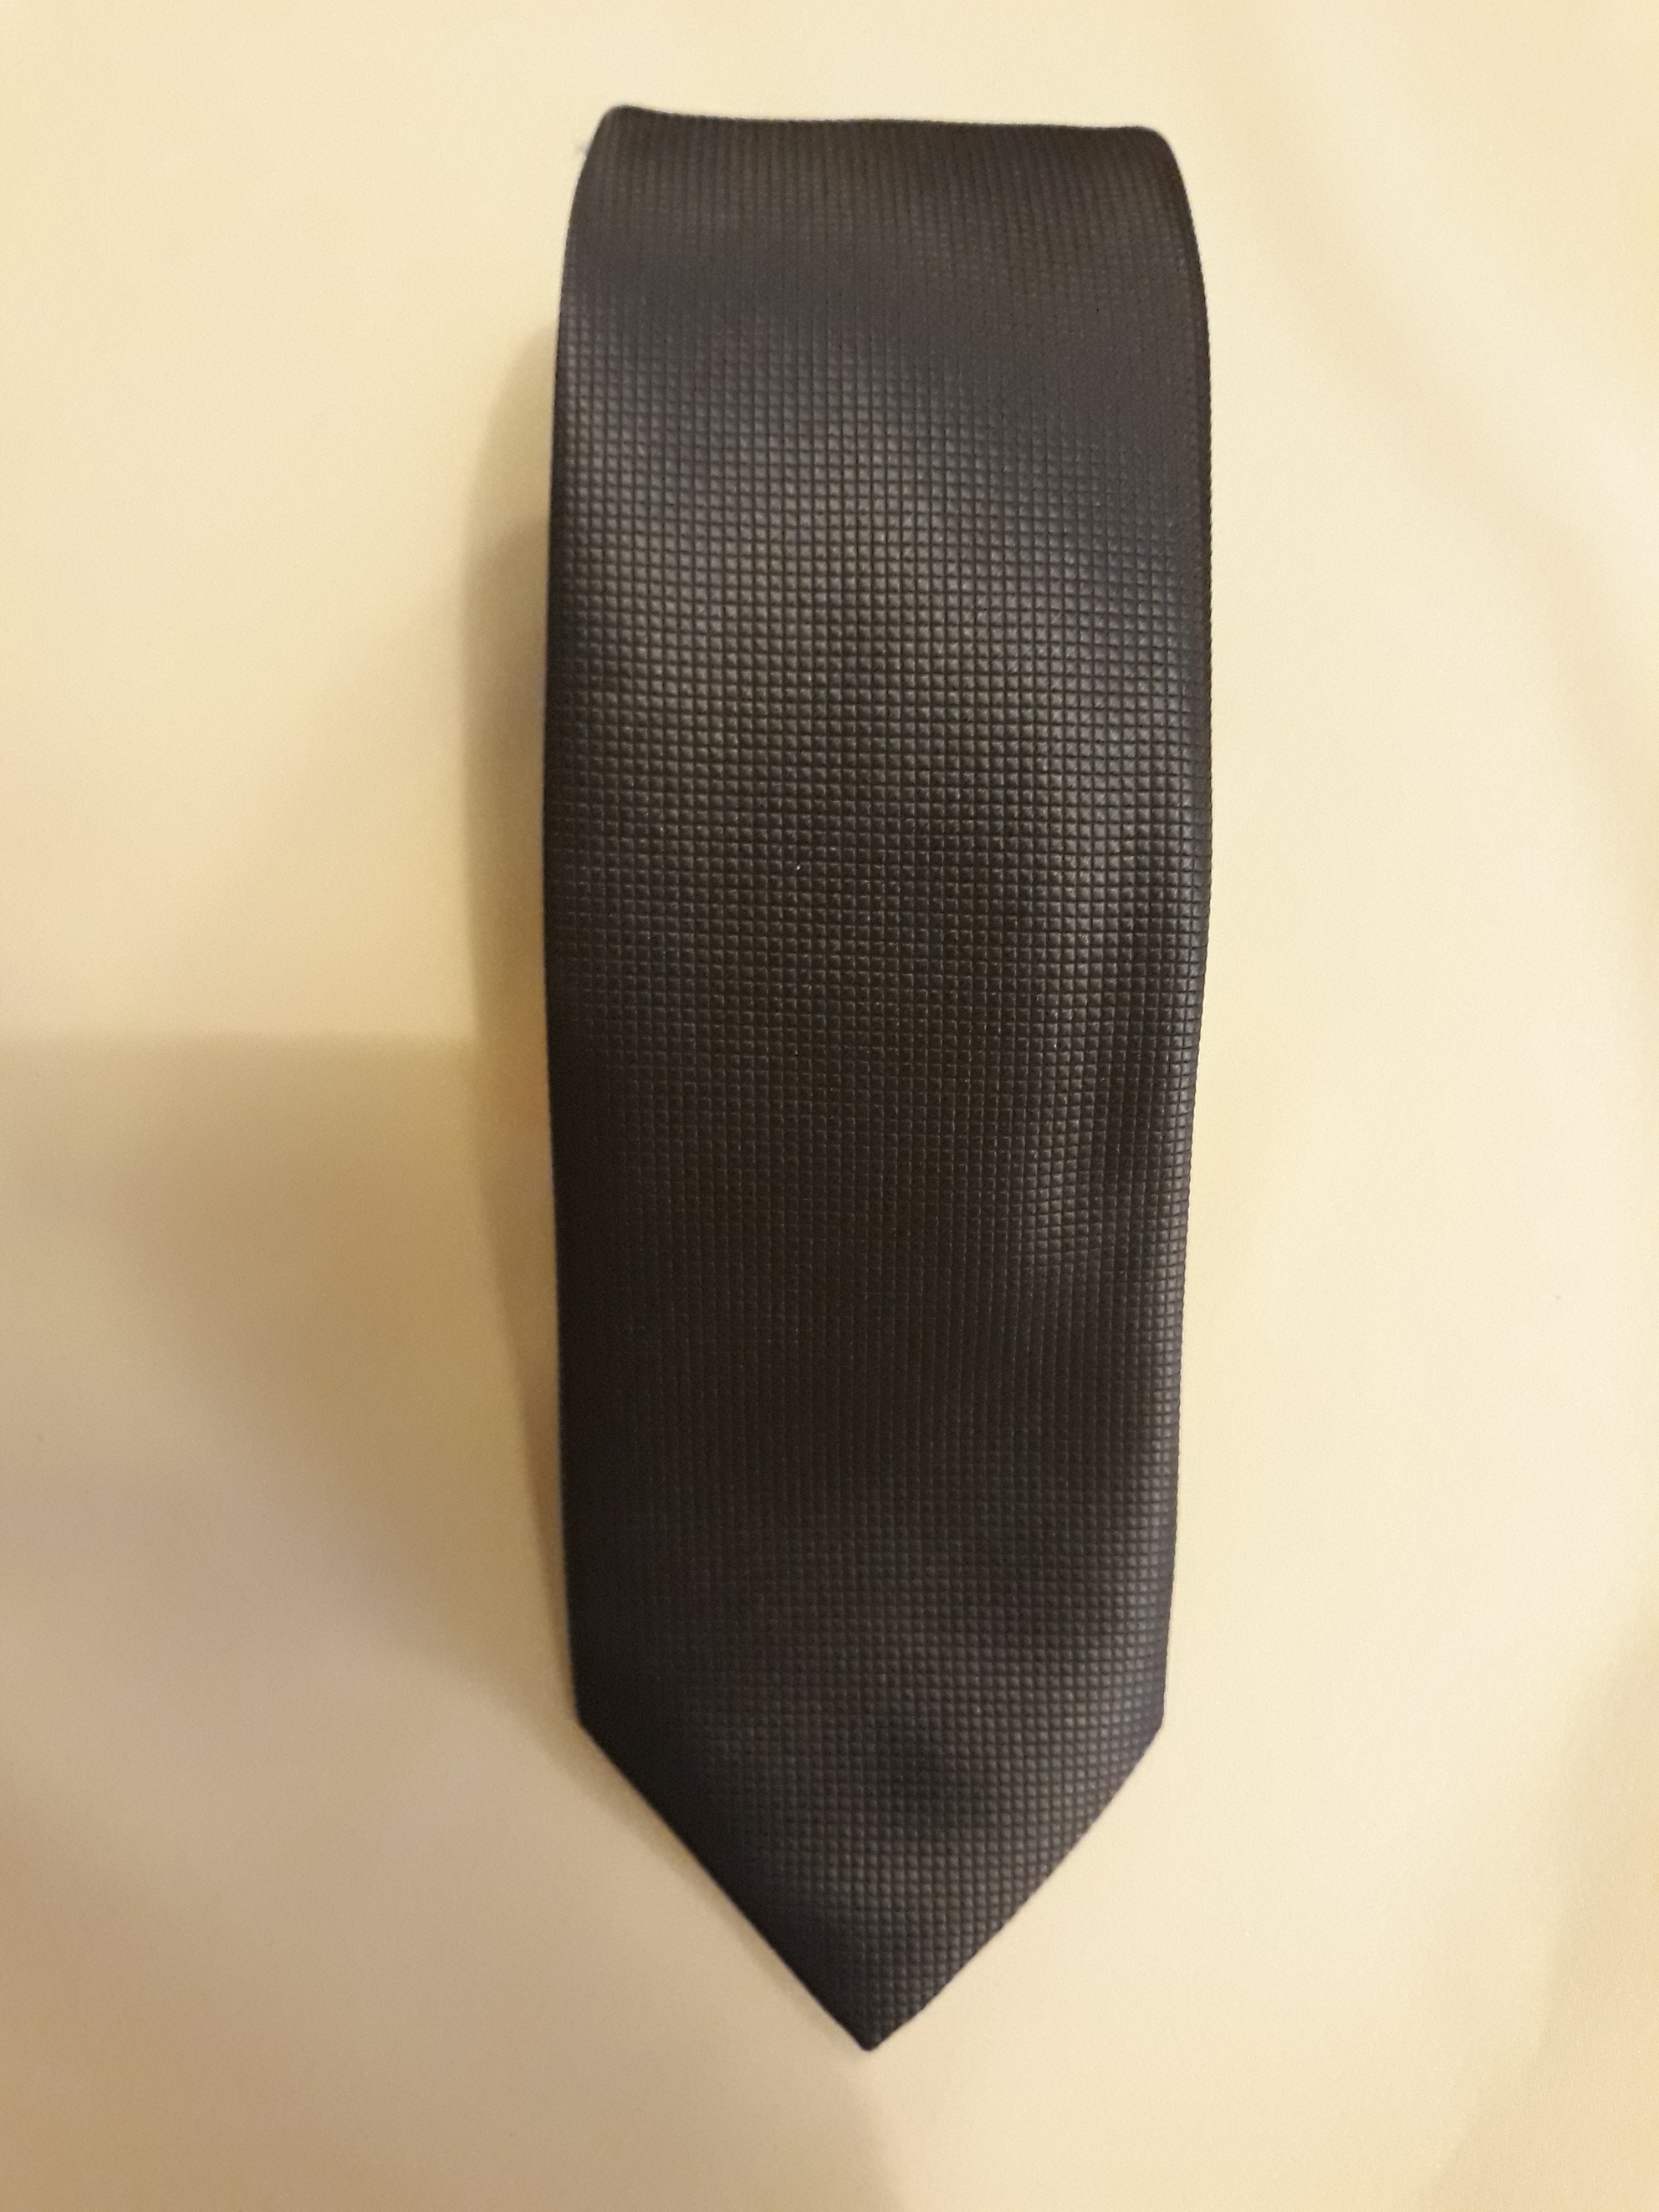 Pierre Cardin kravat. Koyu gri. Orjinal urun.%100 Microfiber.